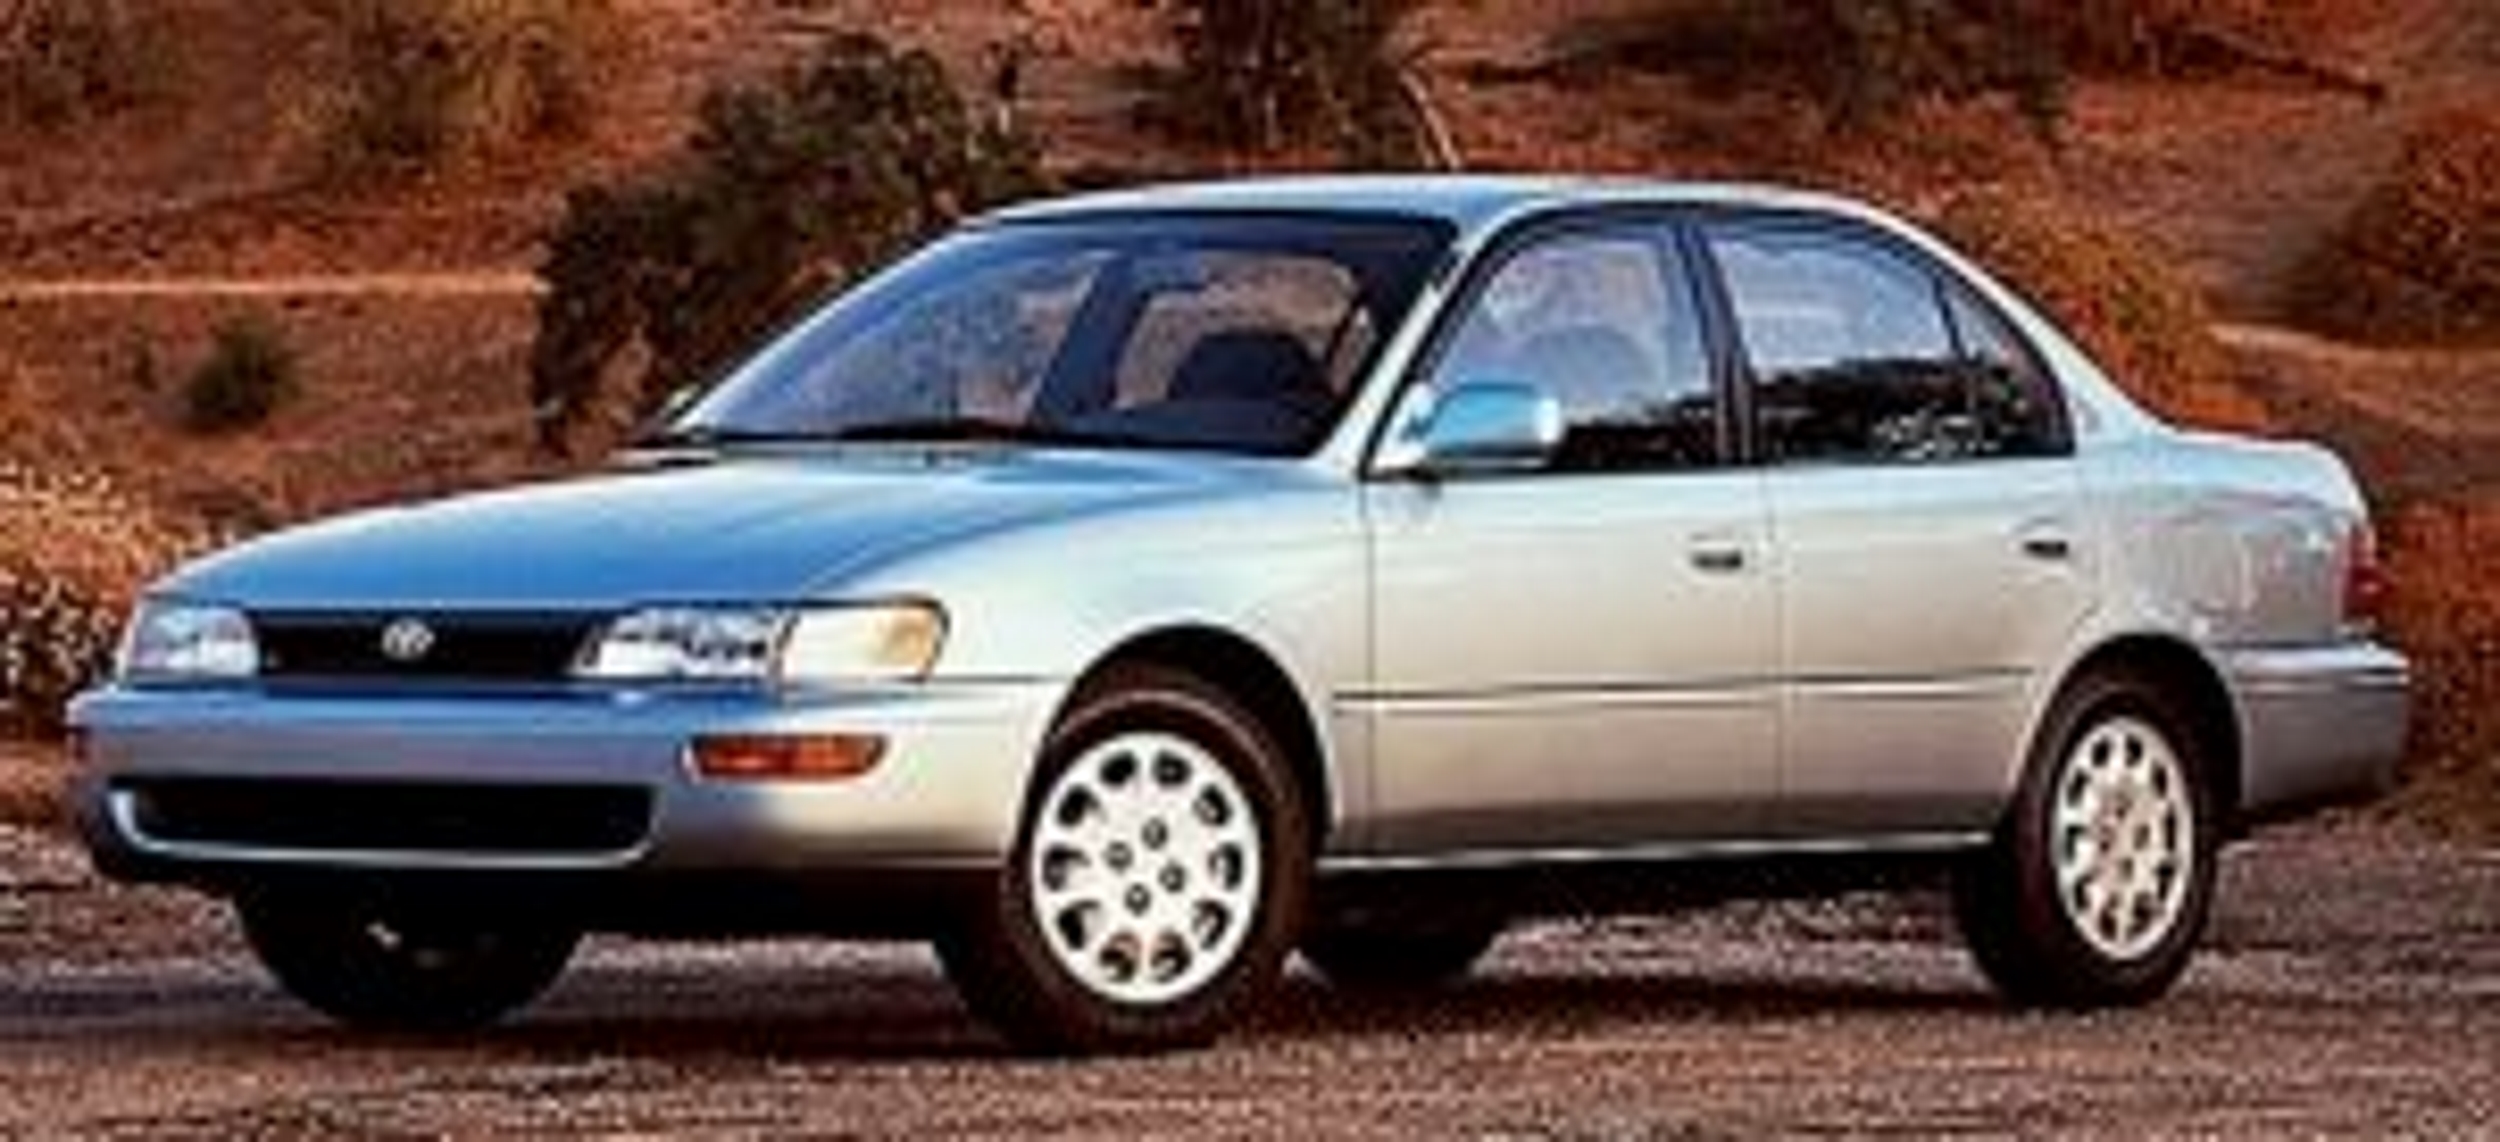 Toyota Corolla 1992 prata de frente na terra